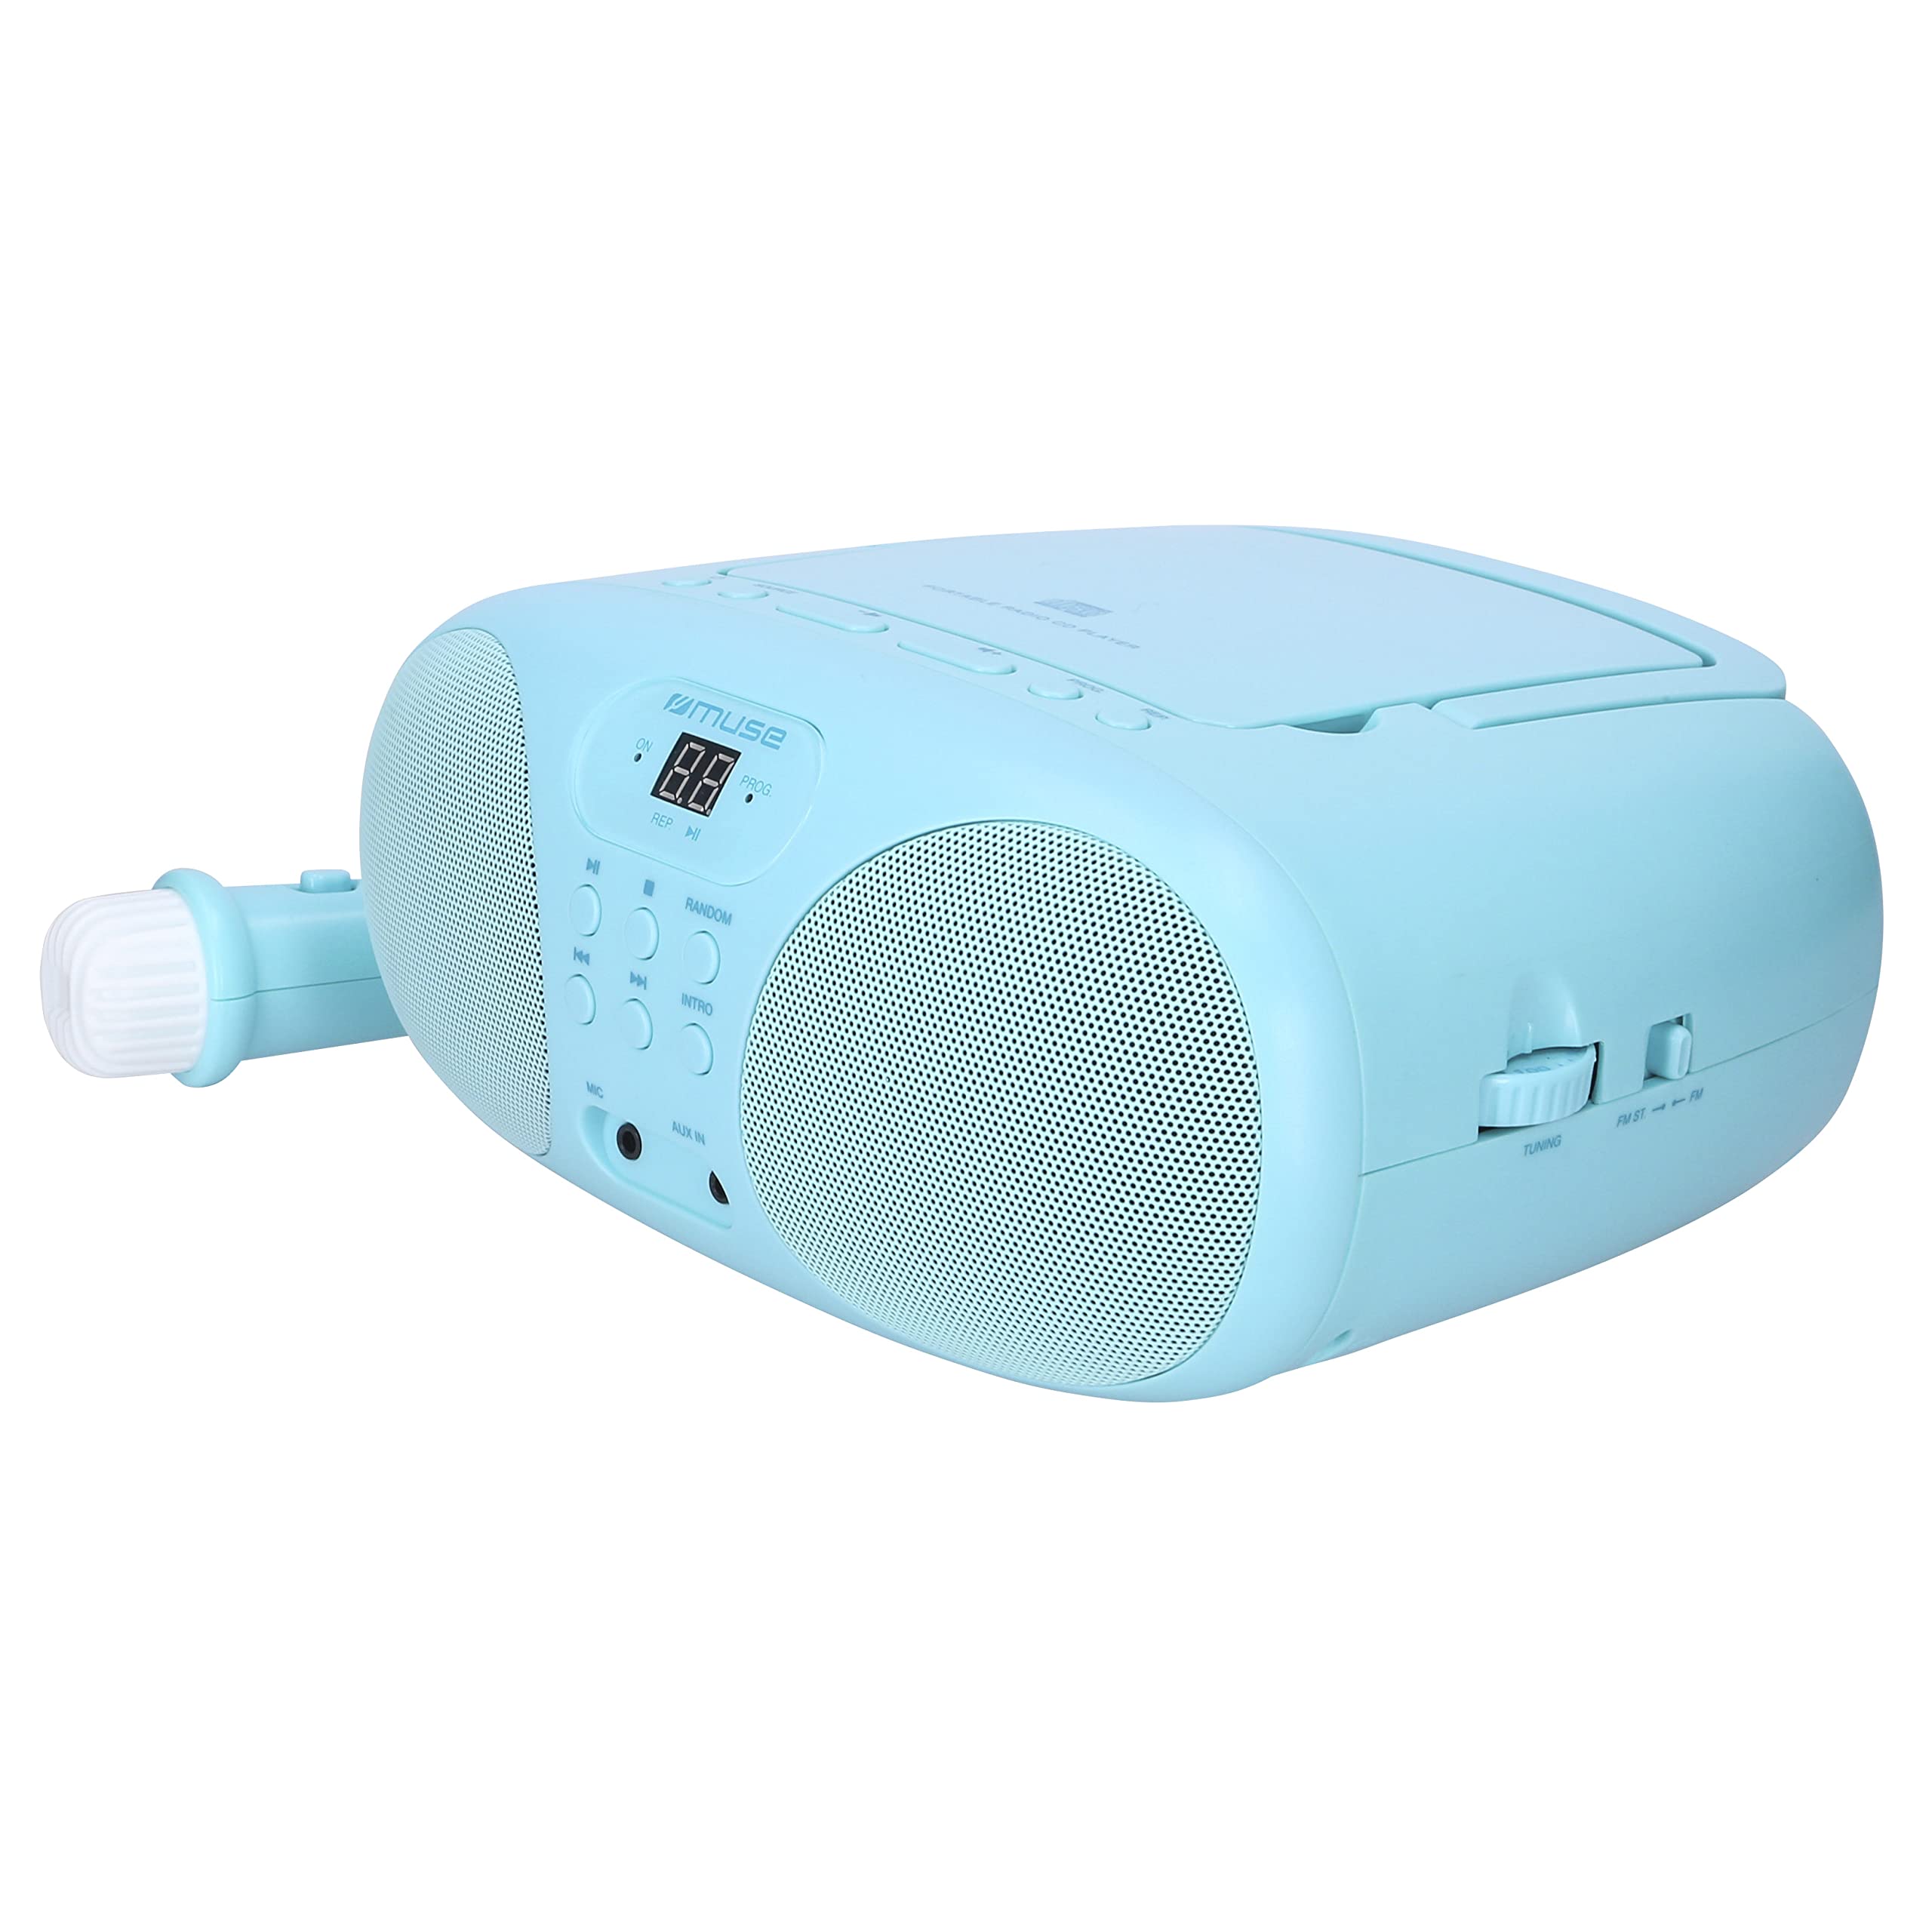 Muse M-203 KB CD-Player und FM-Radio | für Jungen in blau | tragbar mit Griff | Aux-Anschluss | batteriebetrieben oder mit Netzkabel